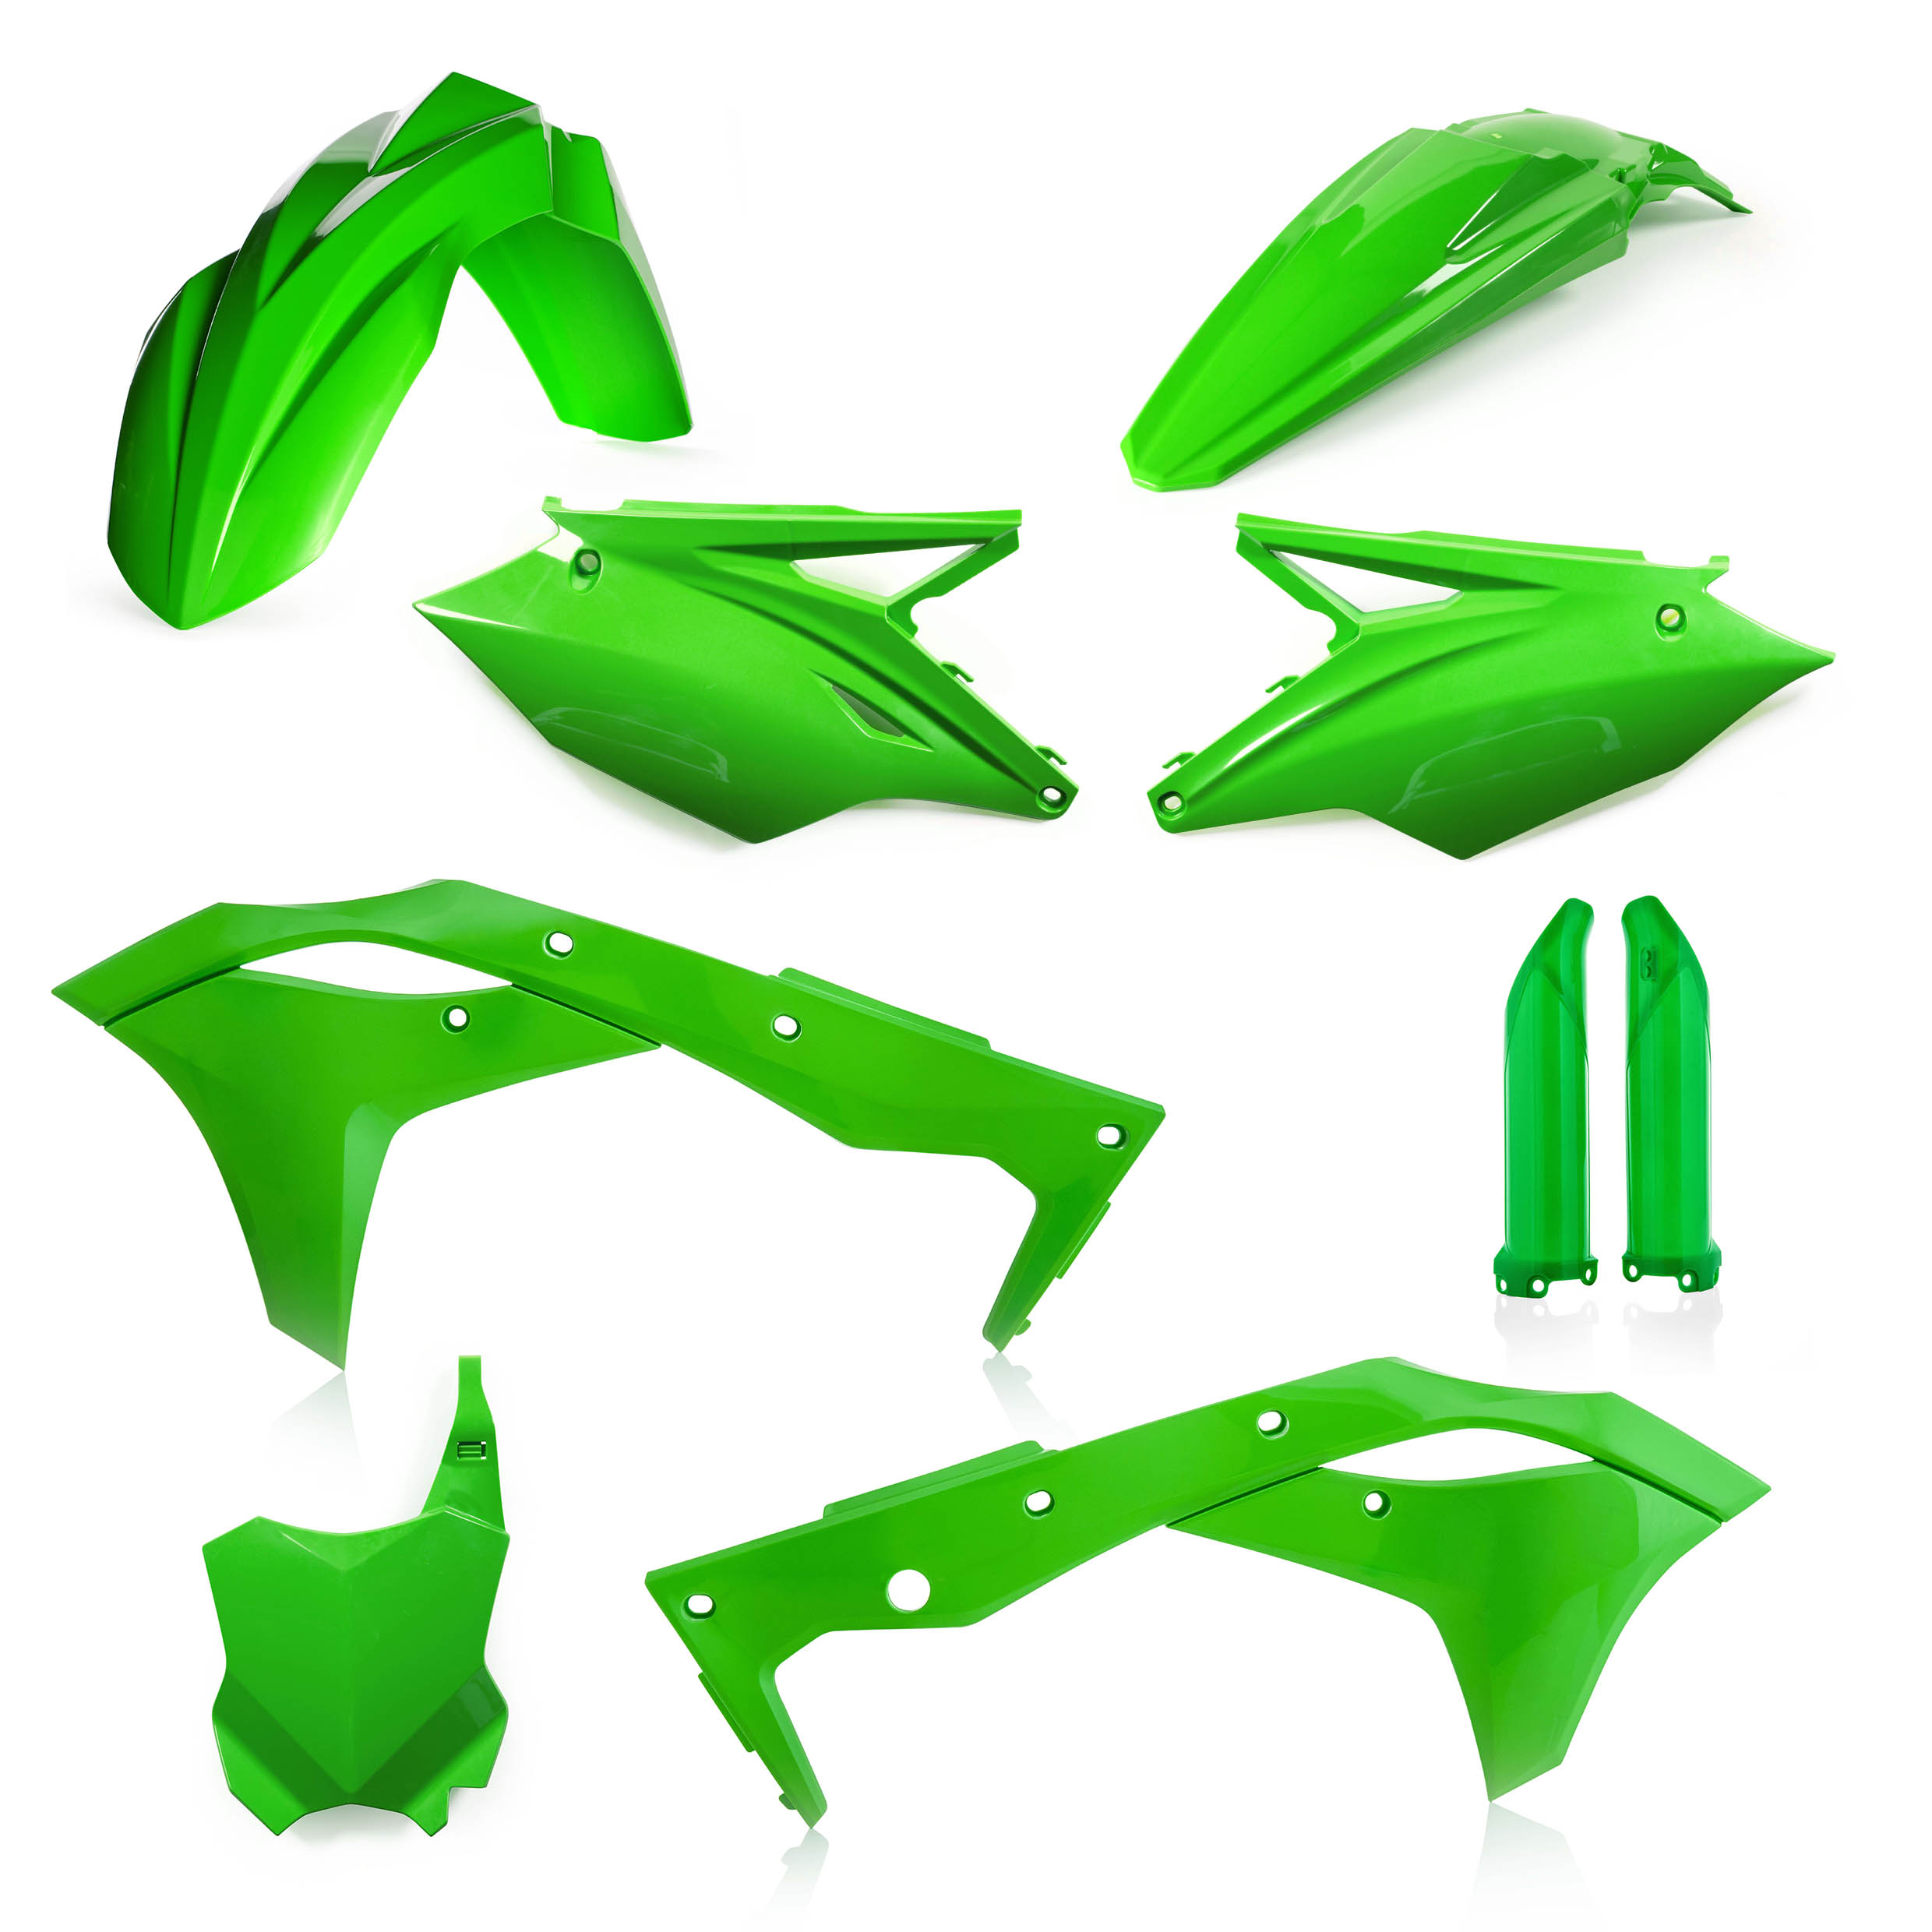 Plastikteile für deine Kawasaki KX 250 in grün bestehend aus Kotflügel vorn Kotflügel hinten Kühlerspoiler Seitenteile Gabelschützer Startnummerntafel